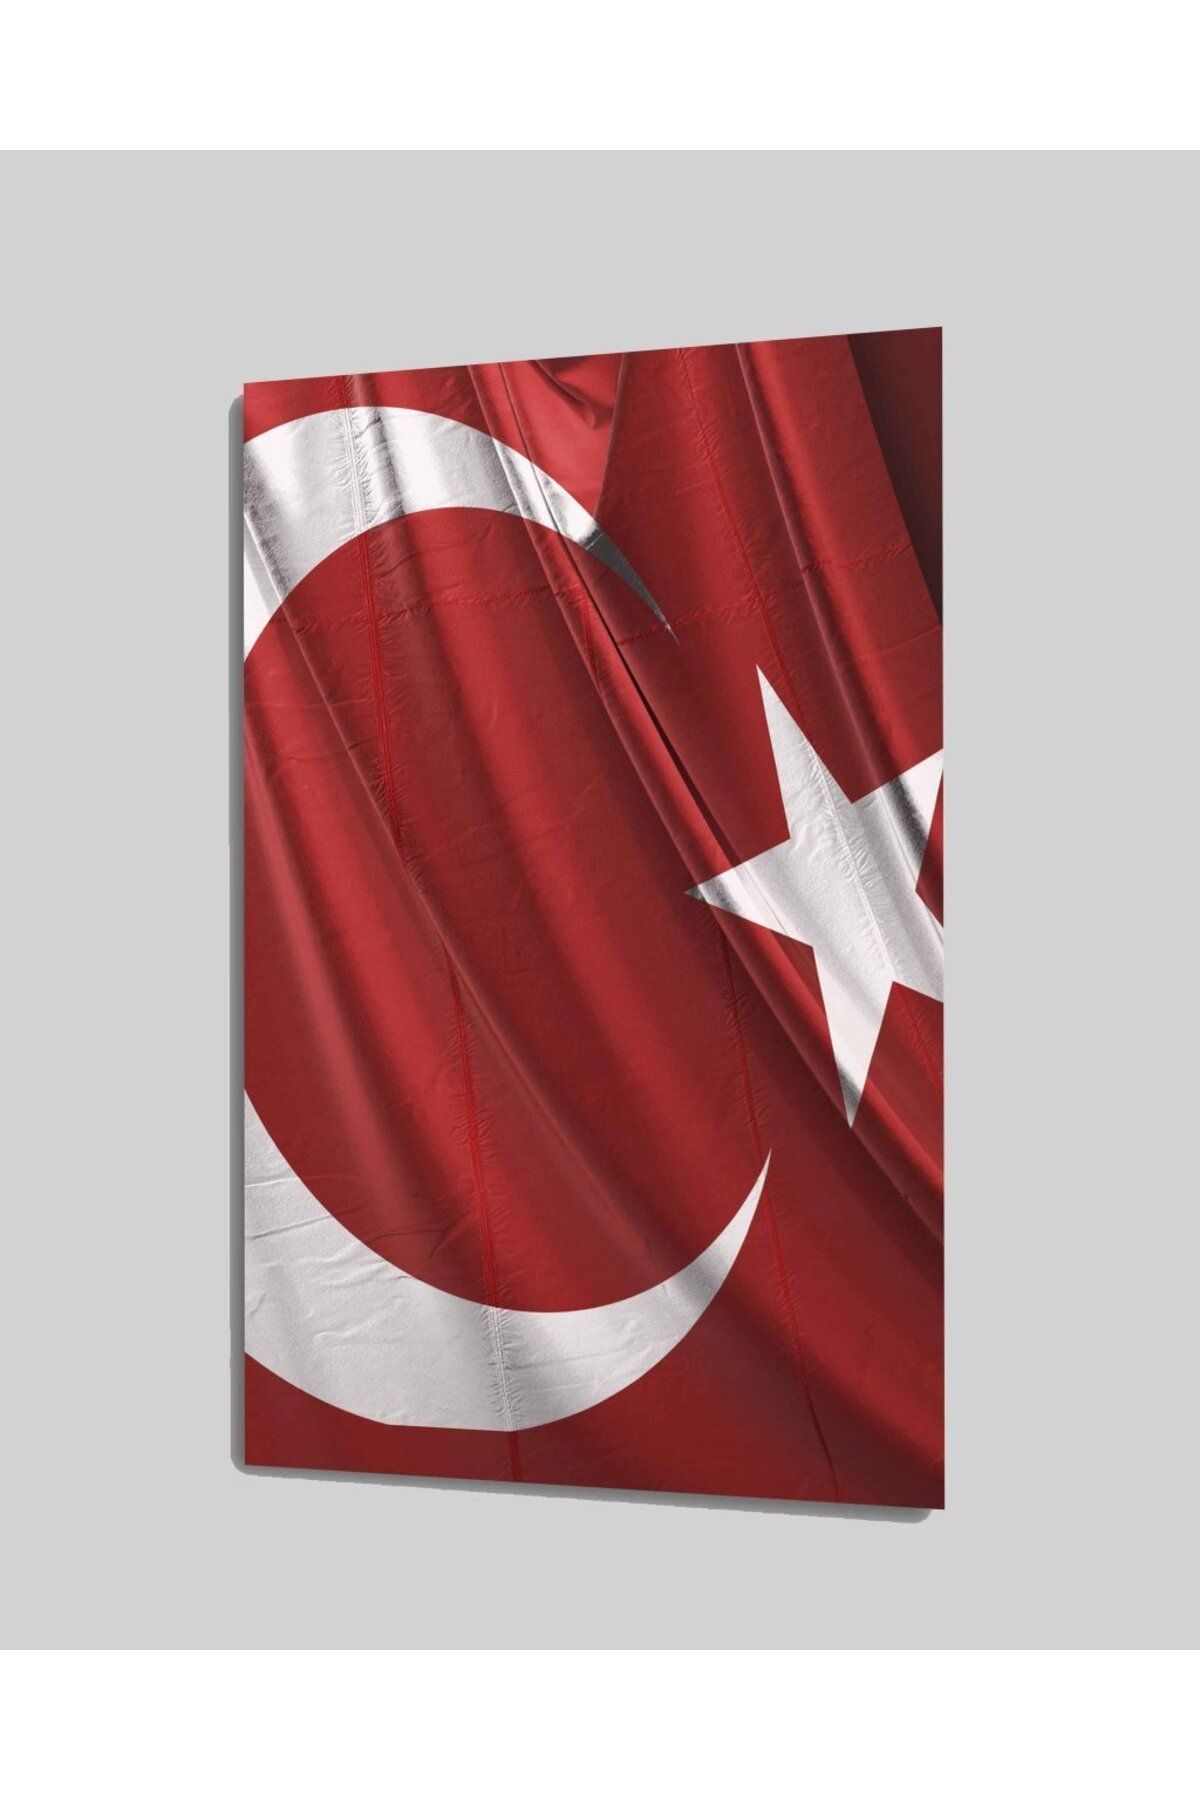 Genel Markalar Türk Bayrağı Cam Tablo